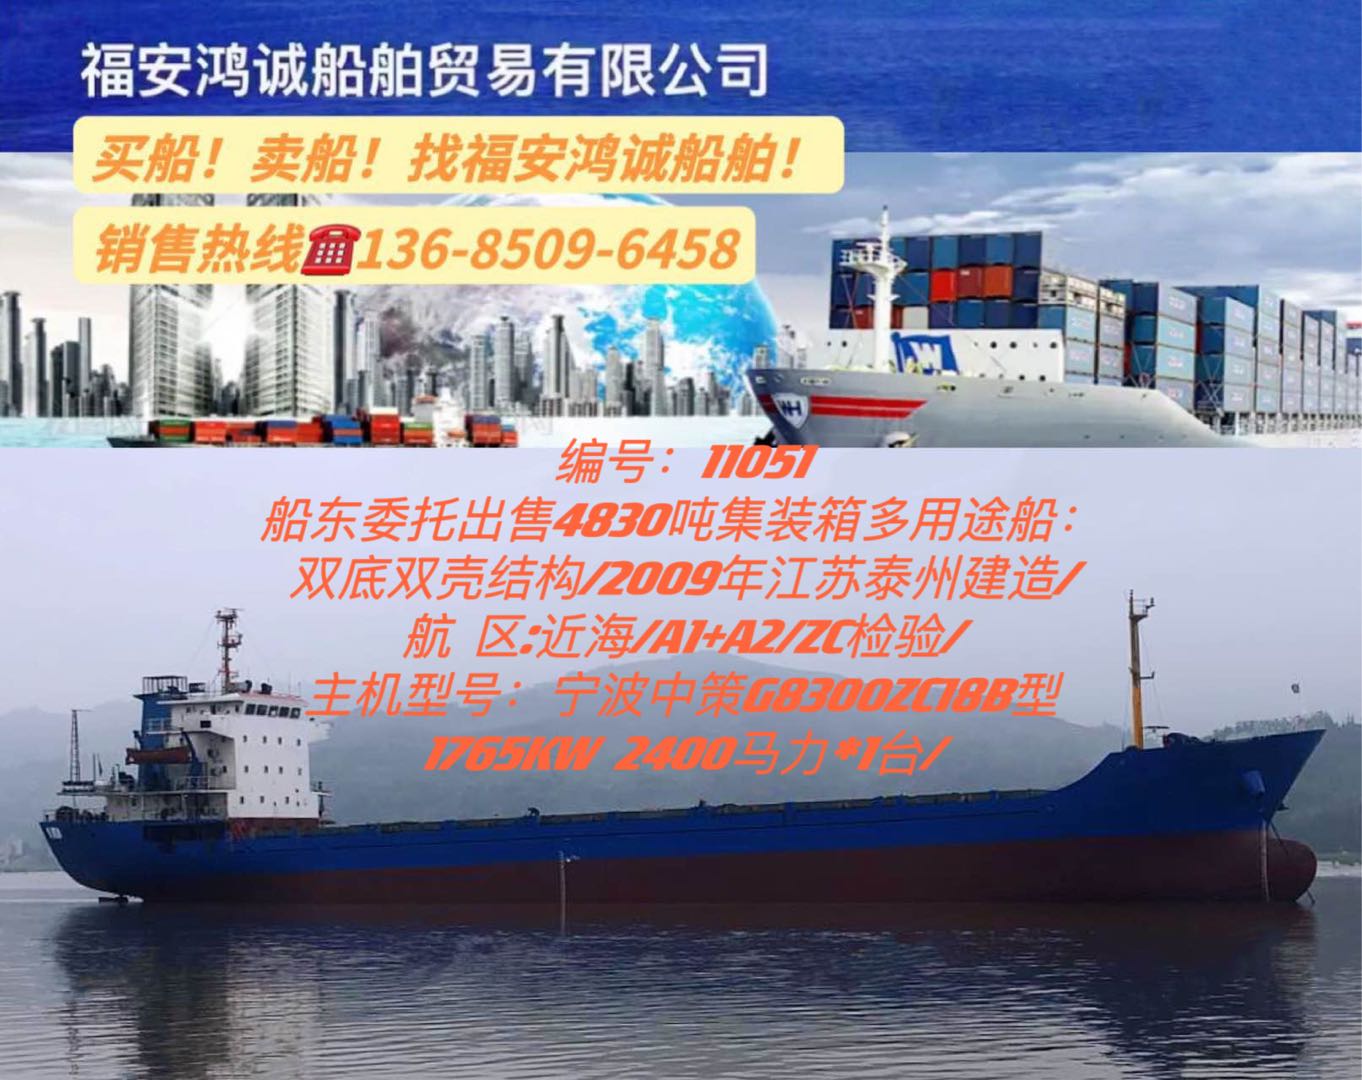 出售09年4830吨集装箱多用途船